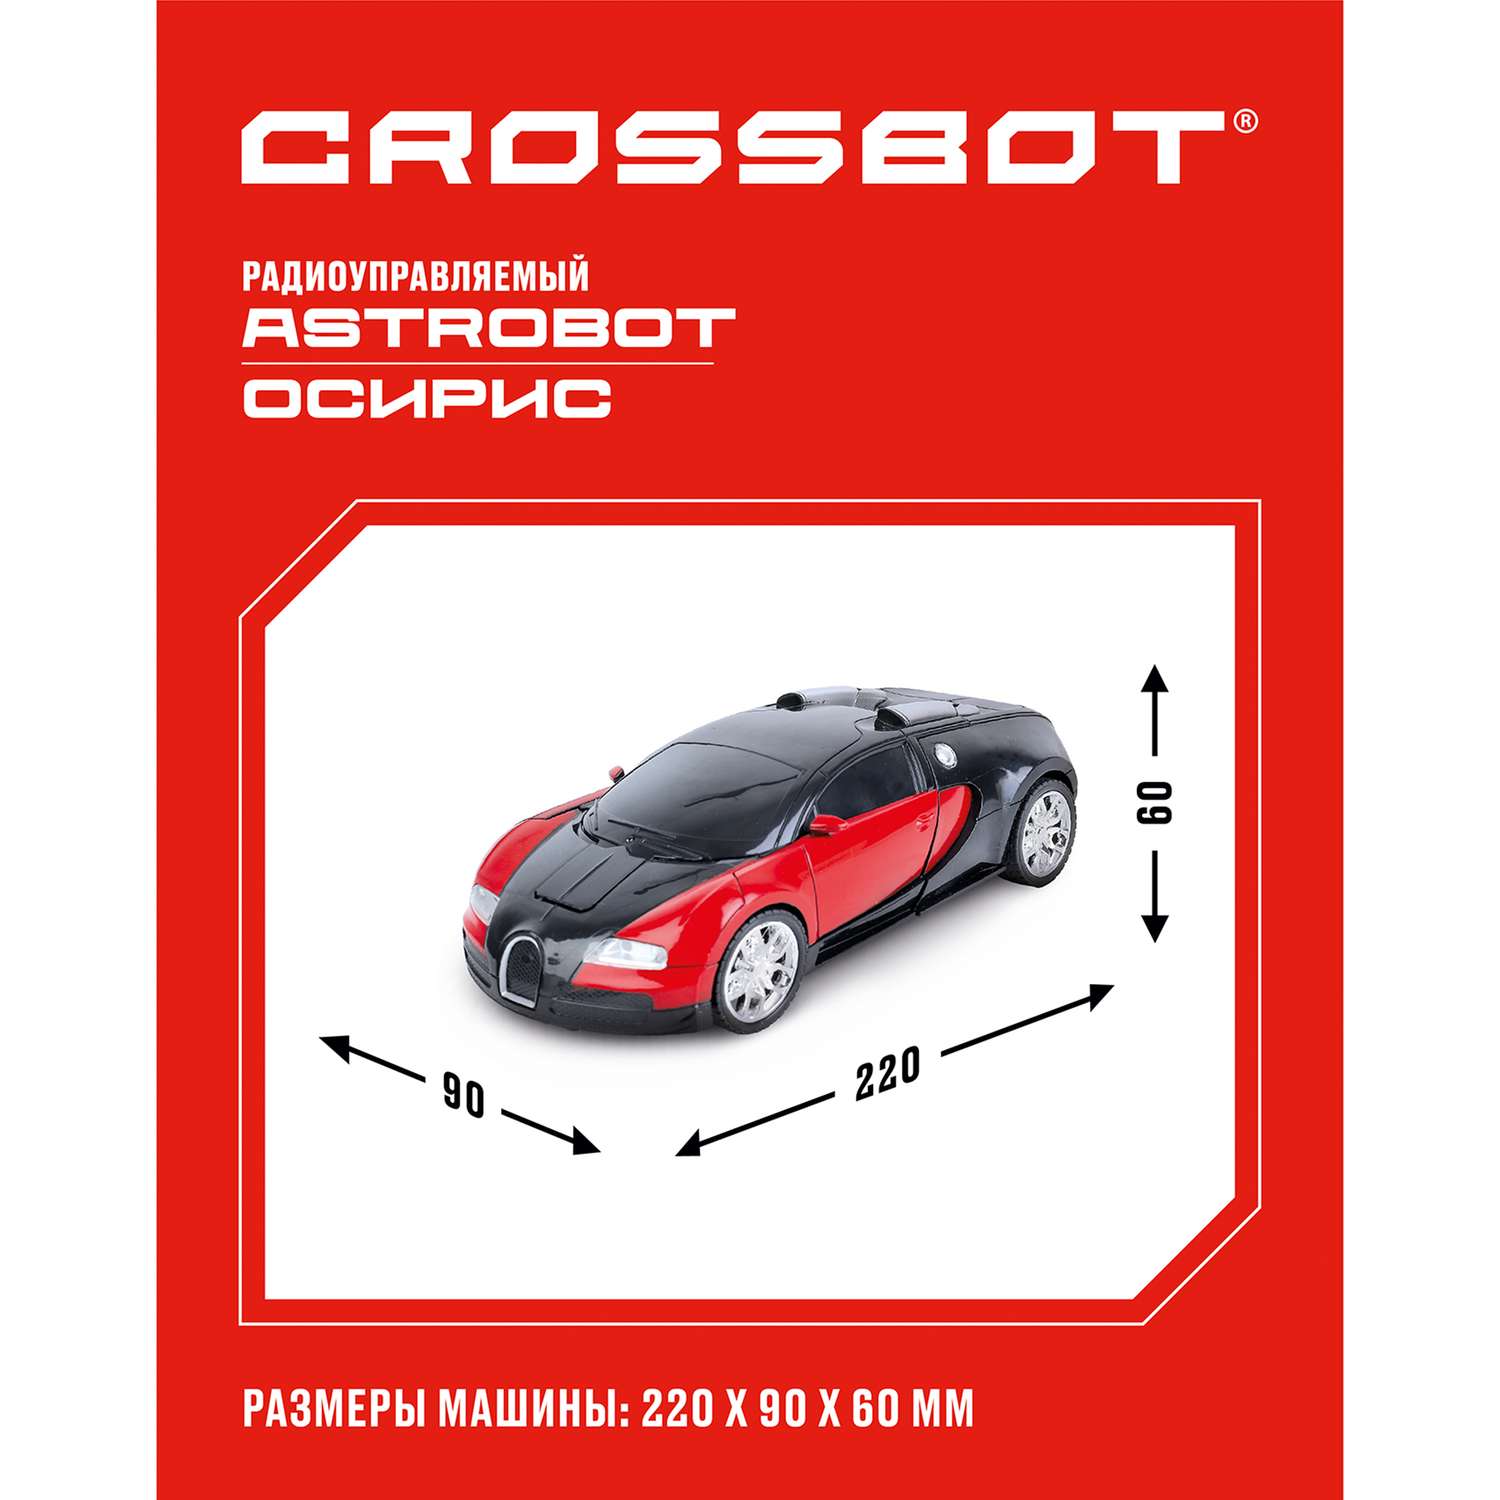 Машина-Робот CROSSBOT радиоуправляемый Astrobot Осирис. Красно-черный - фото 2